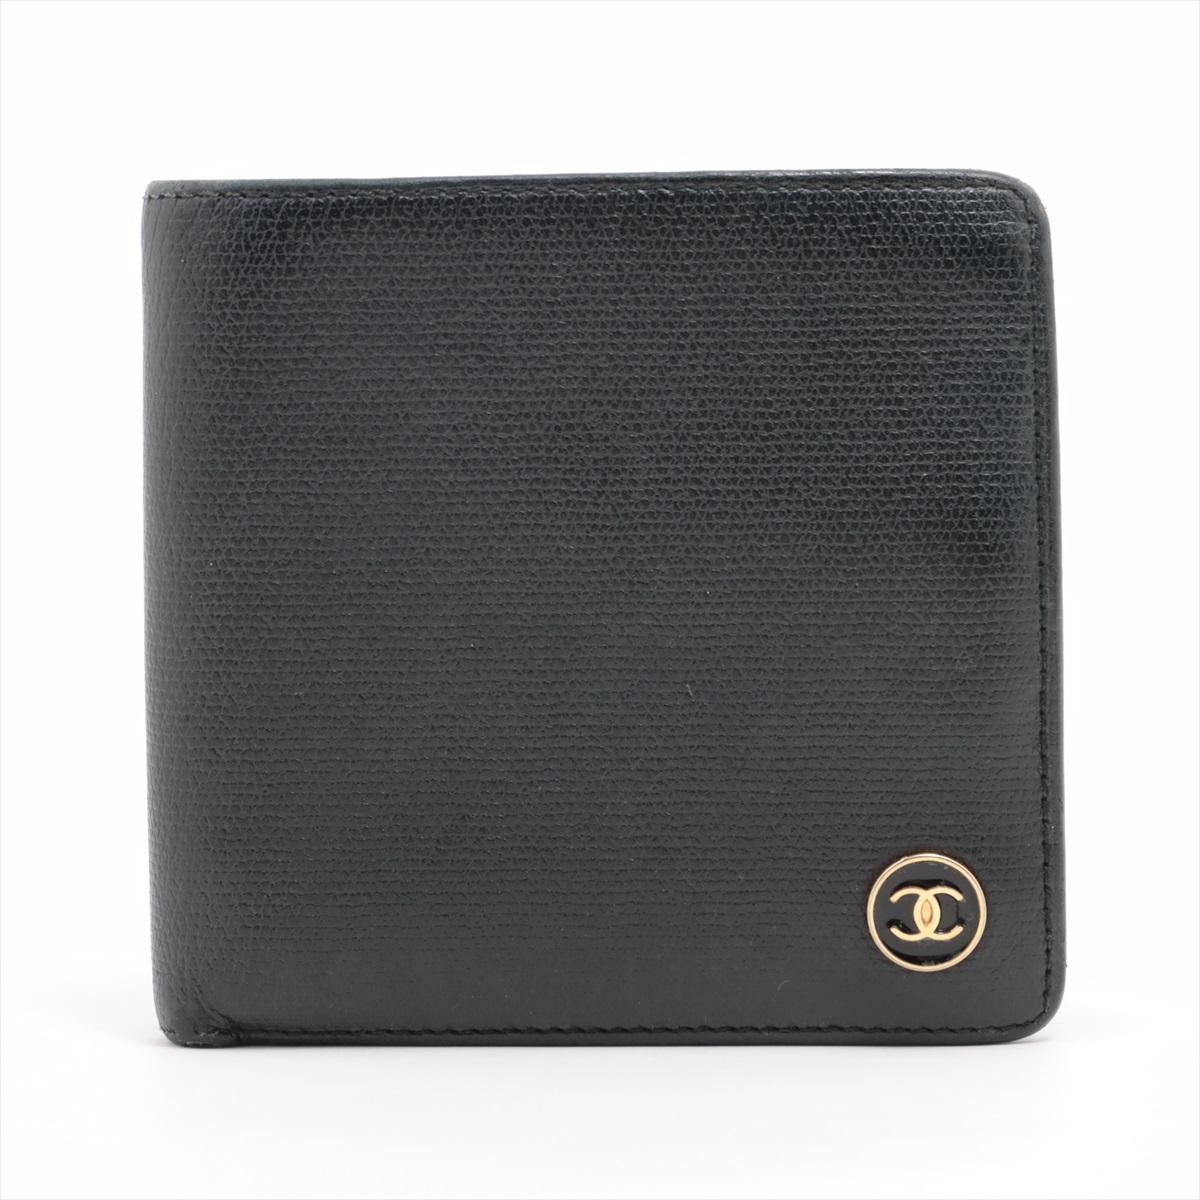 Le portefeuille bi-fold en cuir avec bouton CC de Chanel, en noir, est un accessoire sophistiqué et polyvalent qui respire l'élégance intemporelle. Confectionné en cuir luxueux, ce portefeuille est orné du bouton iconique du logo CC de Chanel, qui